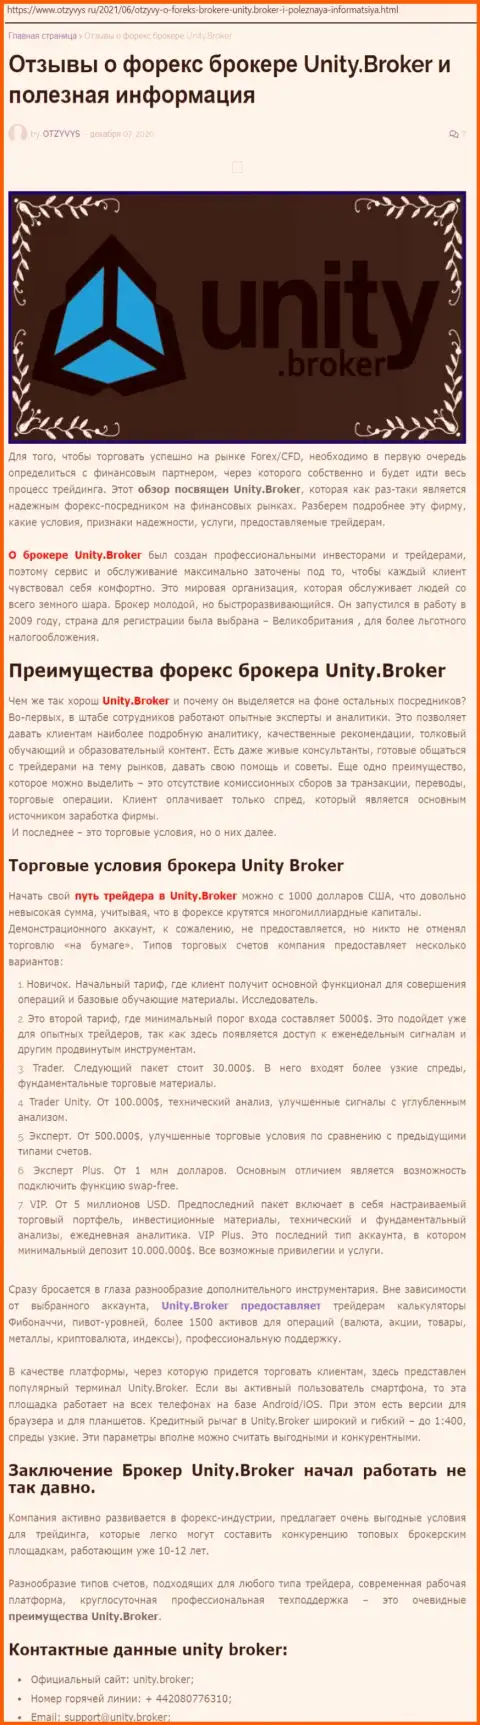 Публикация об ФОРЕКС-дилинговой компании Unity Broker на сайте отзивис ру